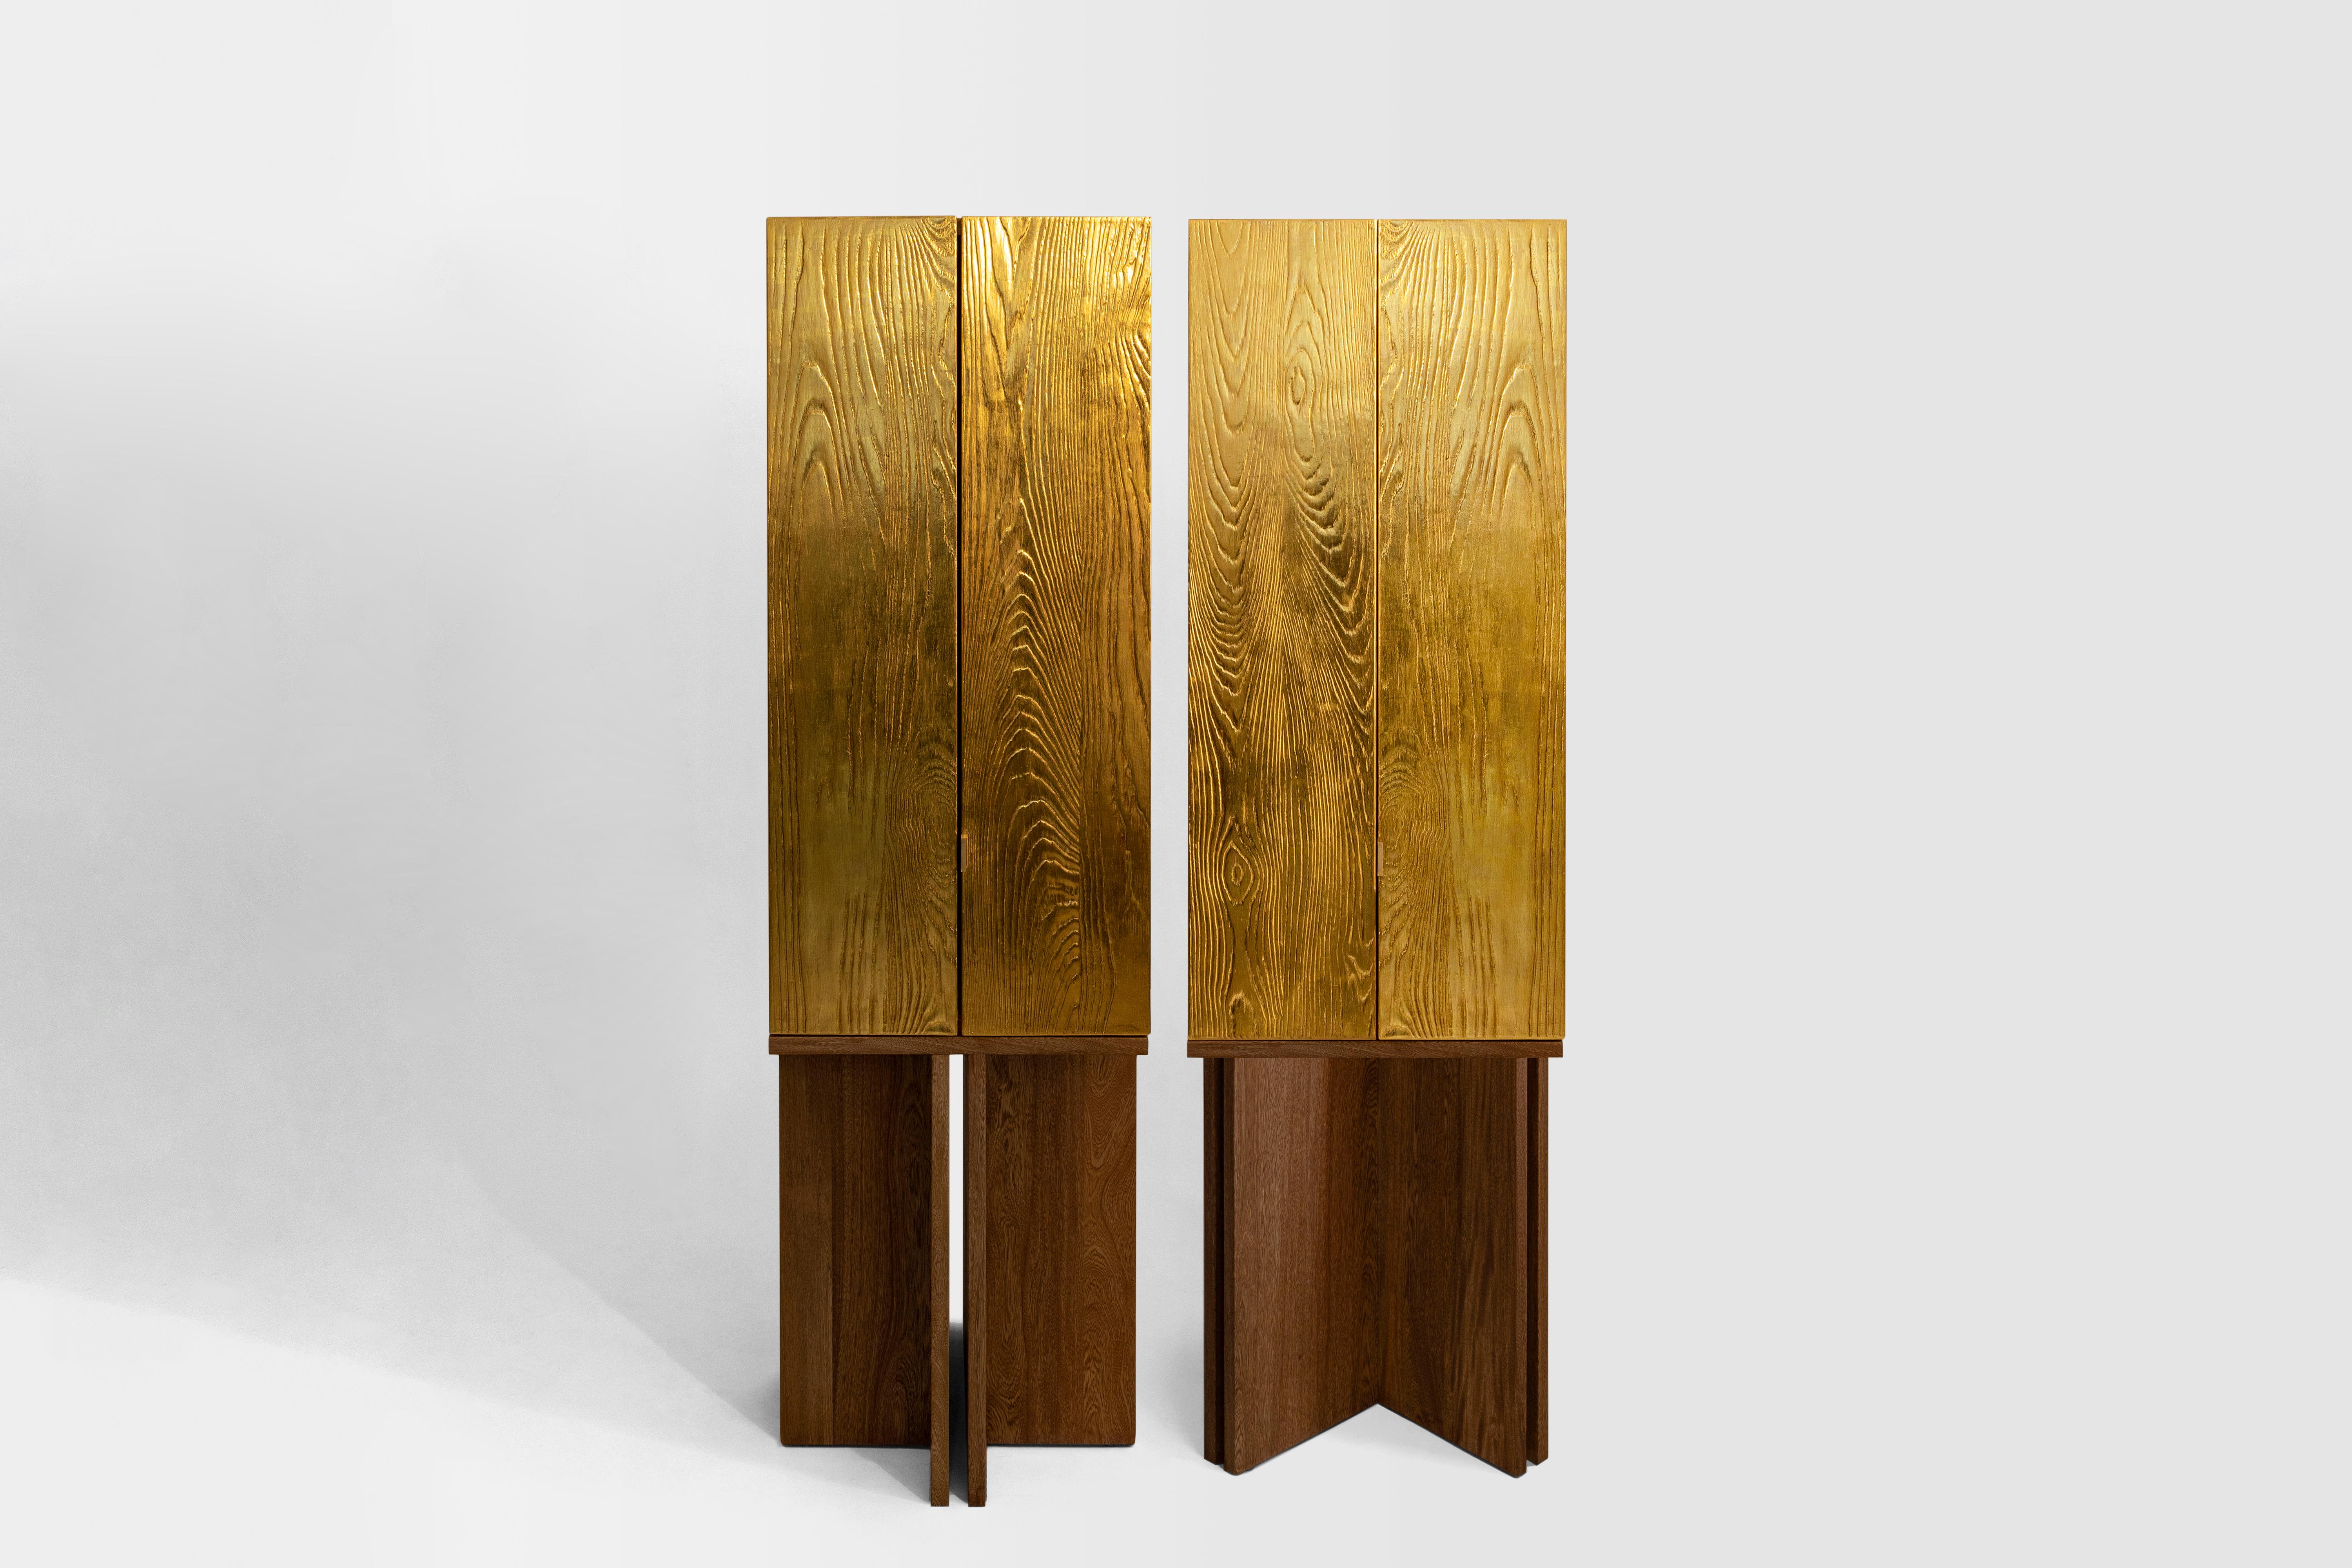 Die Architekten Karla Vázquez von KV und Caterina Moretti von Peca haben gemeinsam die Aurum Cabinets geschaffen, skulpturale Werke und Unikate, die einen ehrlichen Dialog über die uns am nächsten stehenden Gegenstände eröffnen sollen.

Jedes Stück